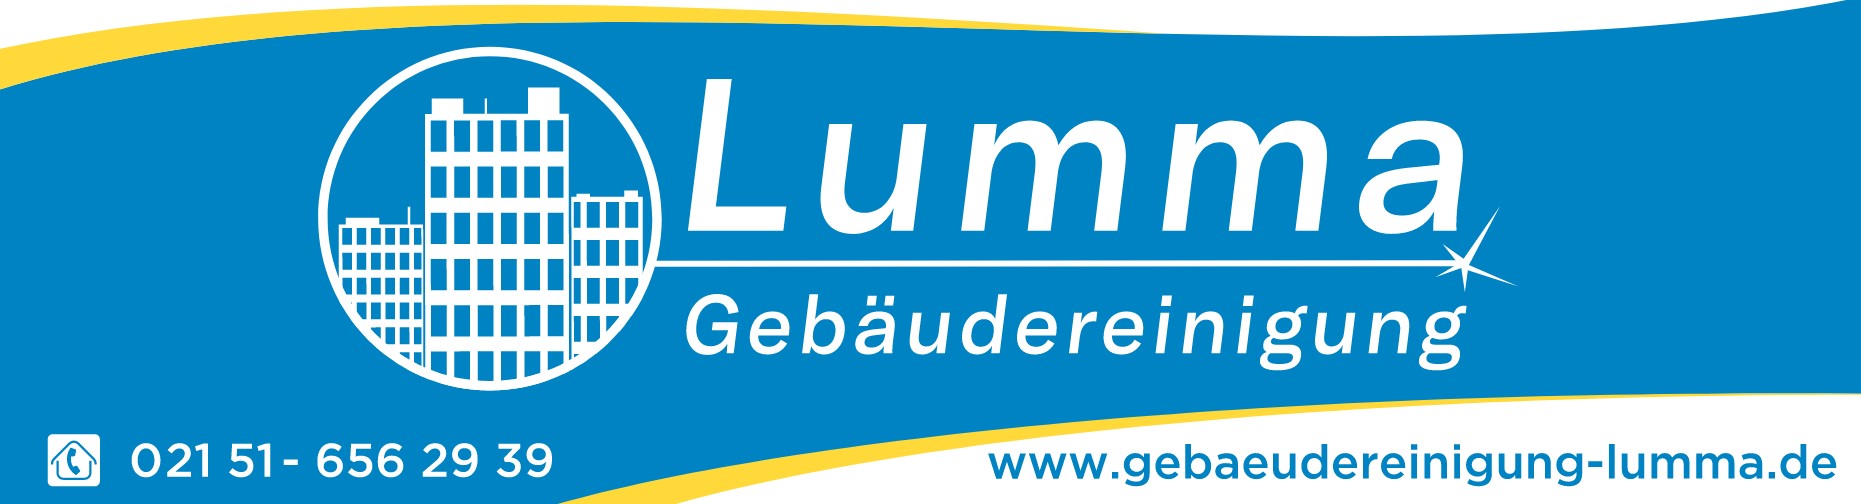 Logo Gebäudereinigung Lumma